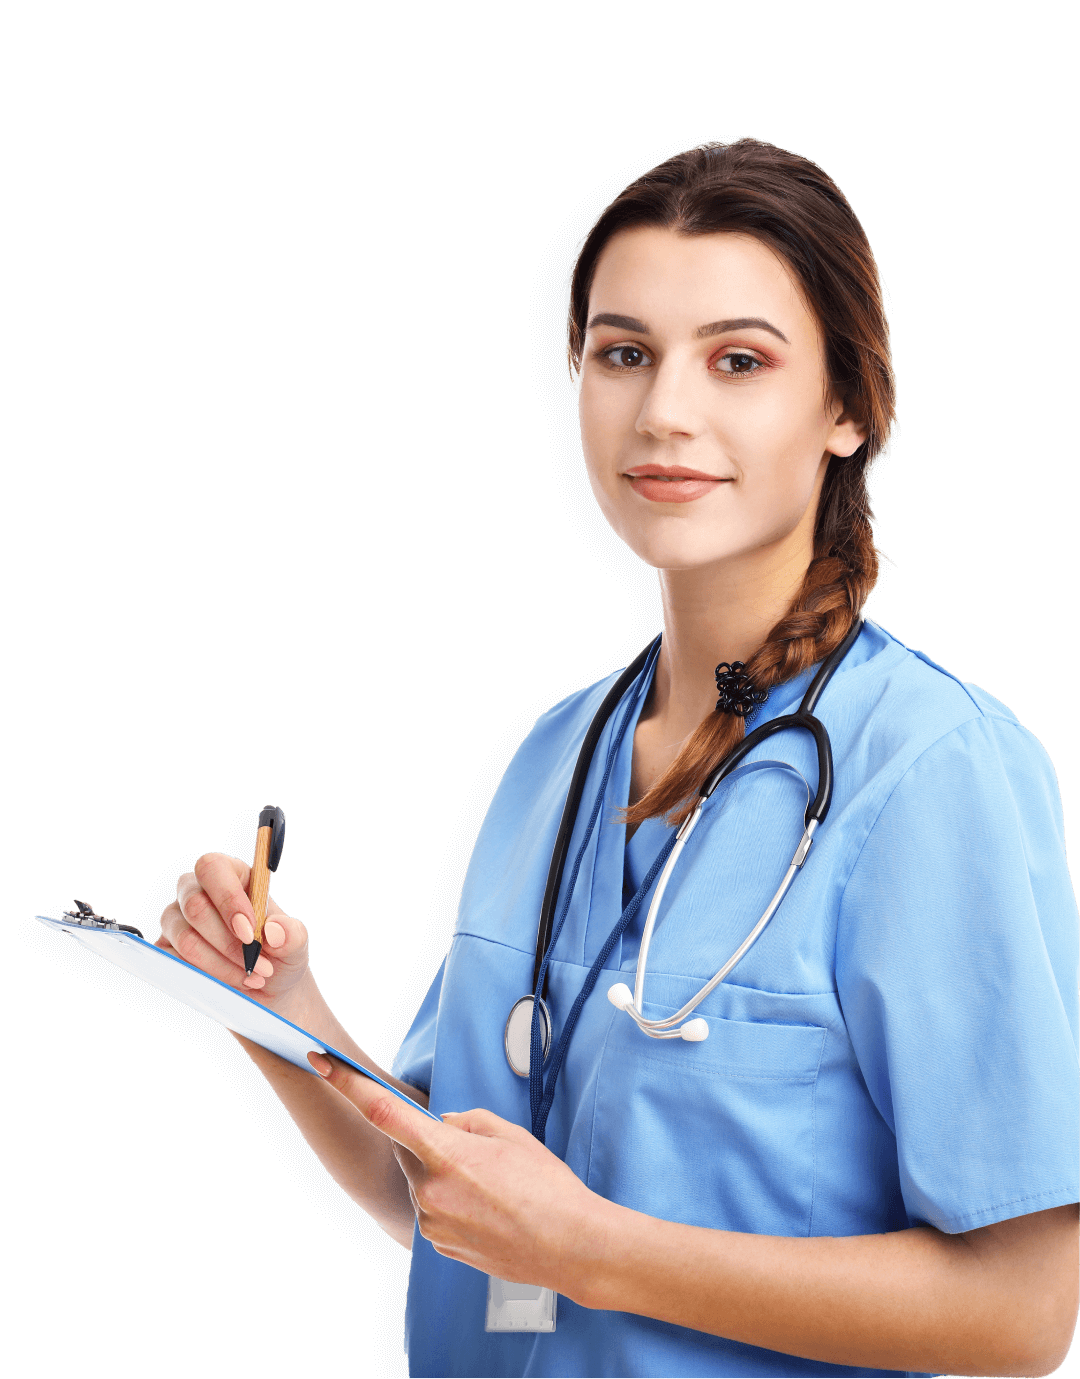 Nurse-Gastroenterology (CGRN) professional